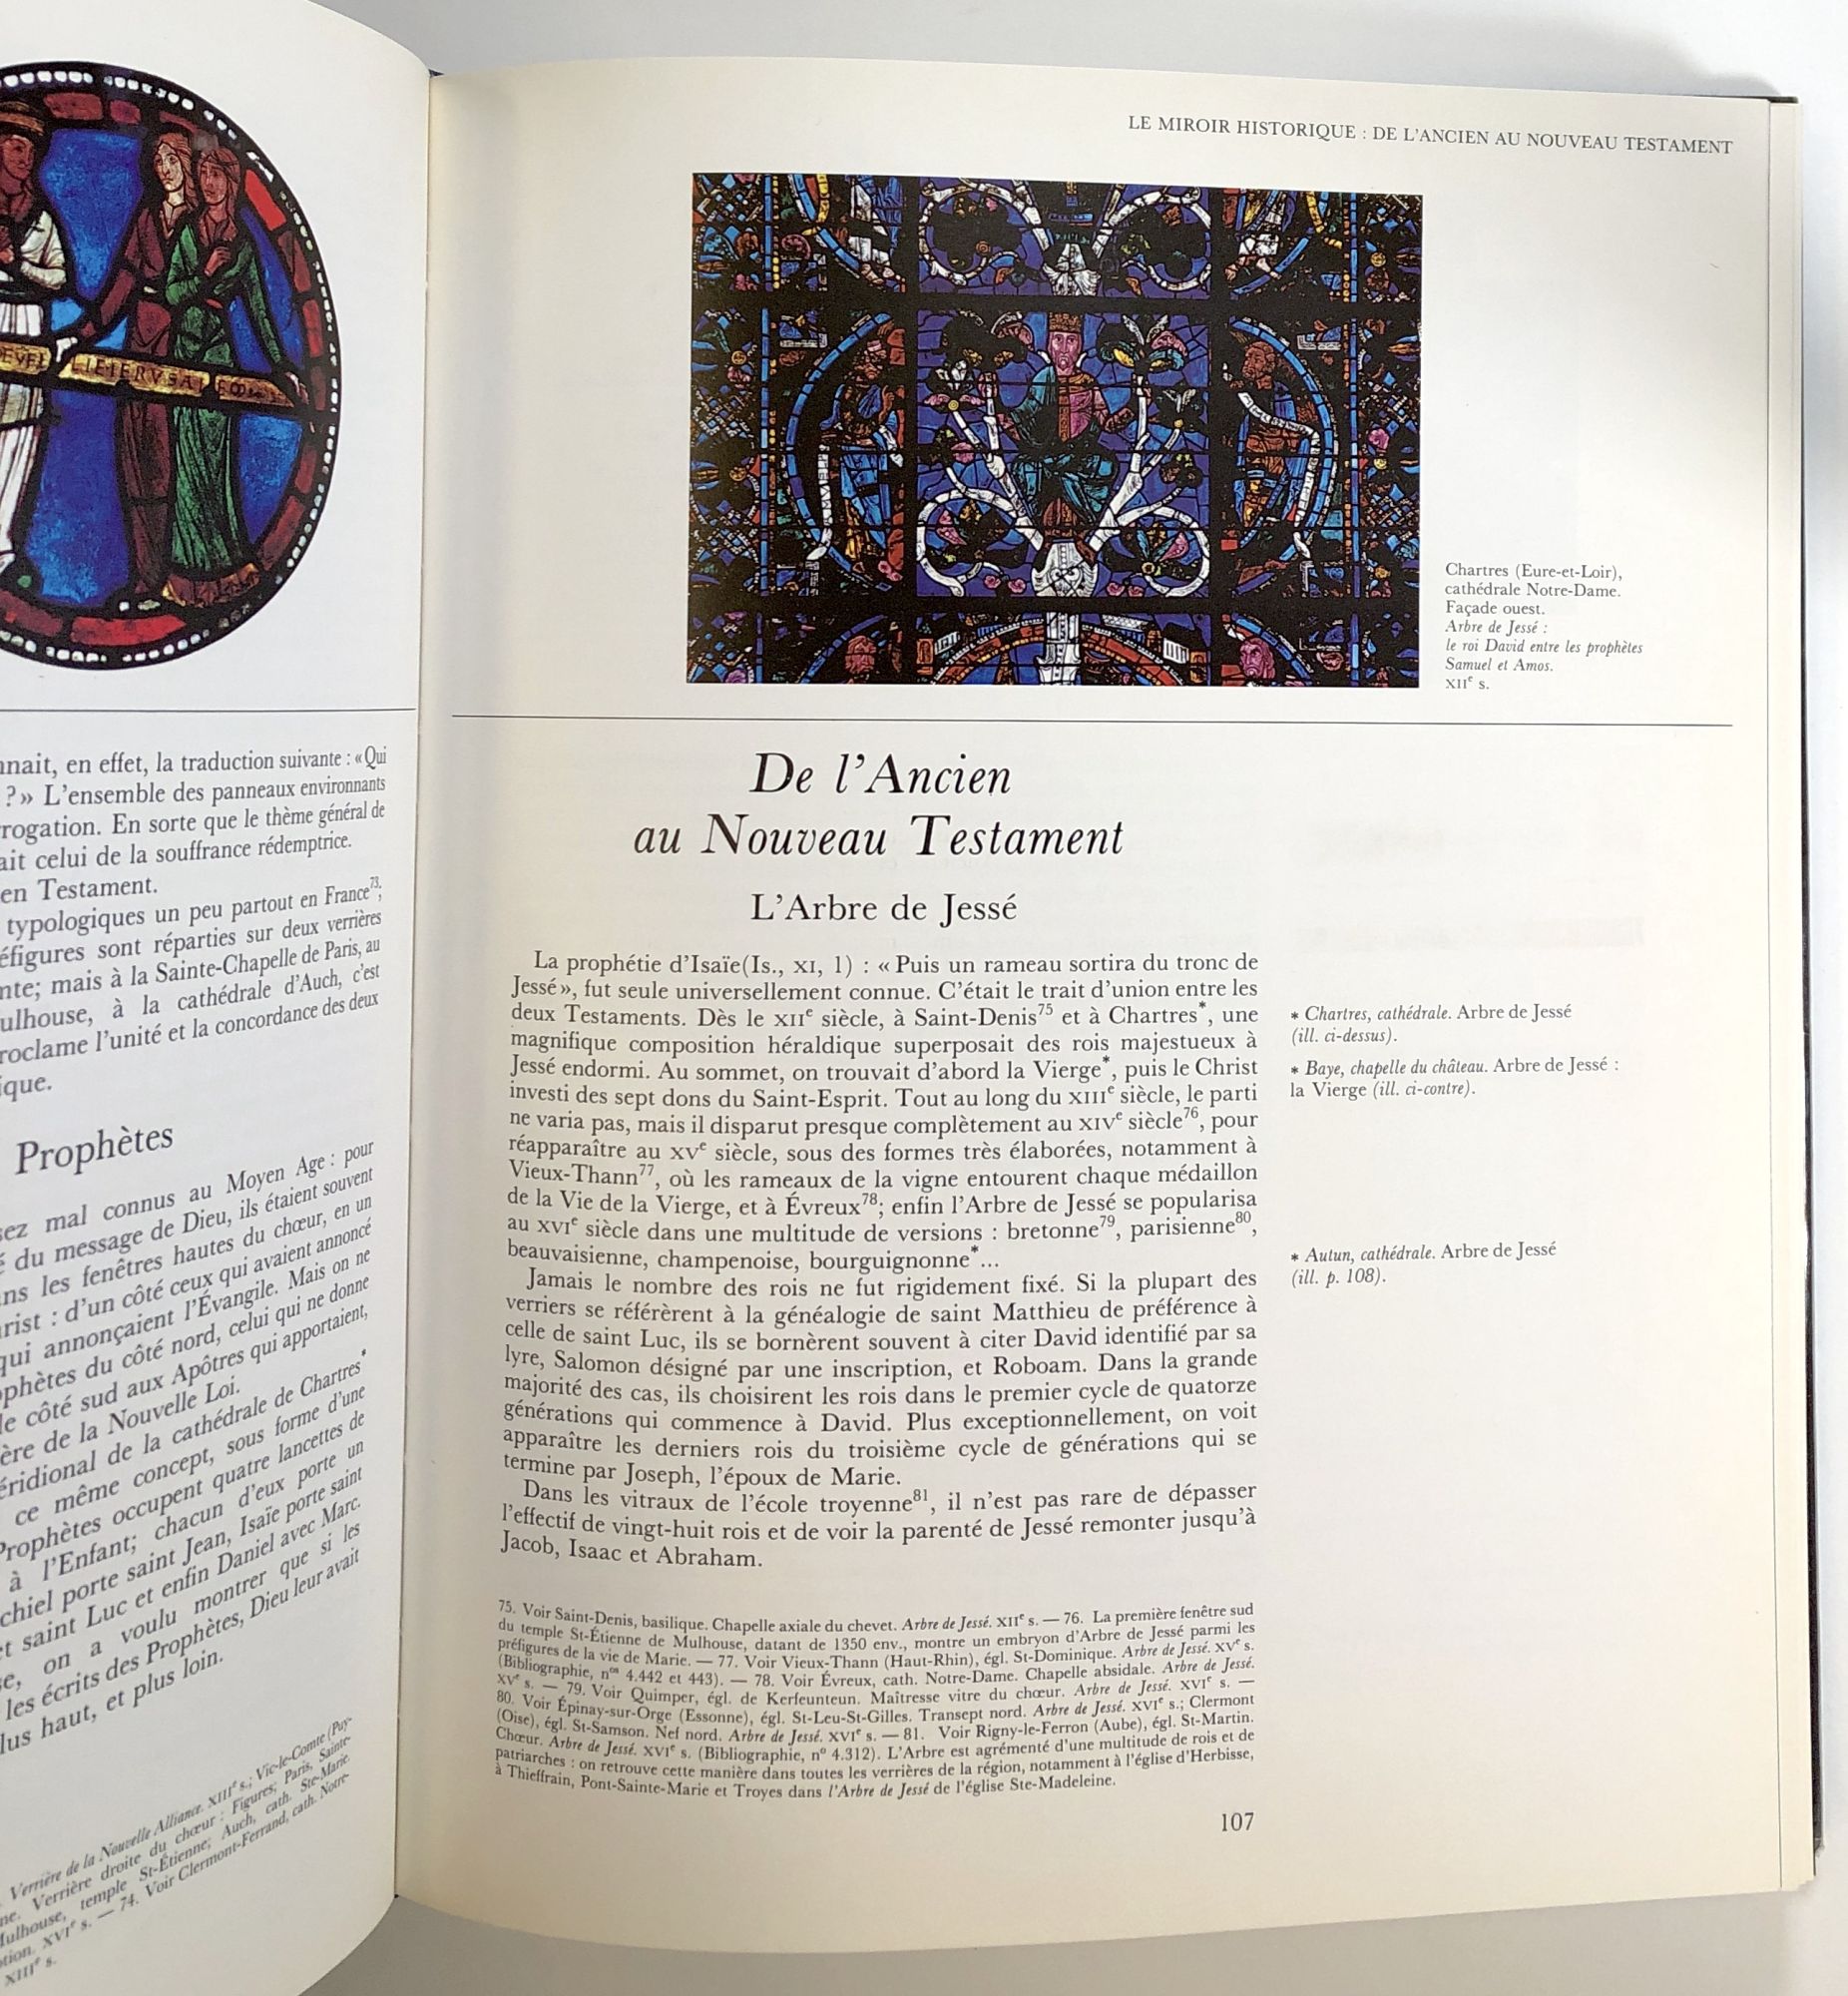 Les Maitres de la Lumiere; Preface de Jacques Le Goff by Jean Rollet, pref  Jacques Le Goff on Common Crow Books